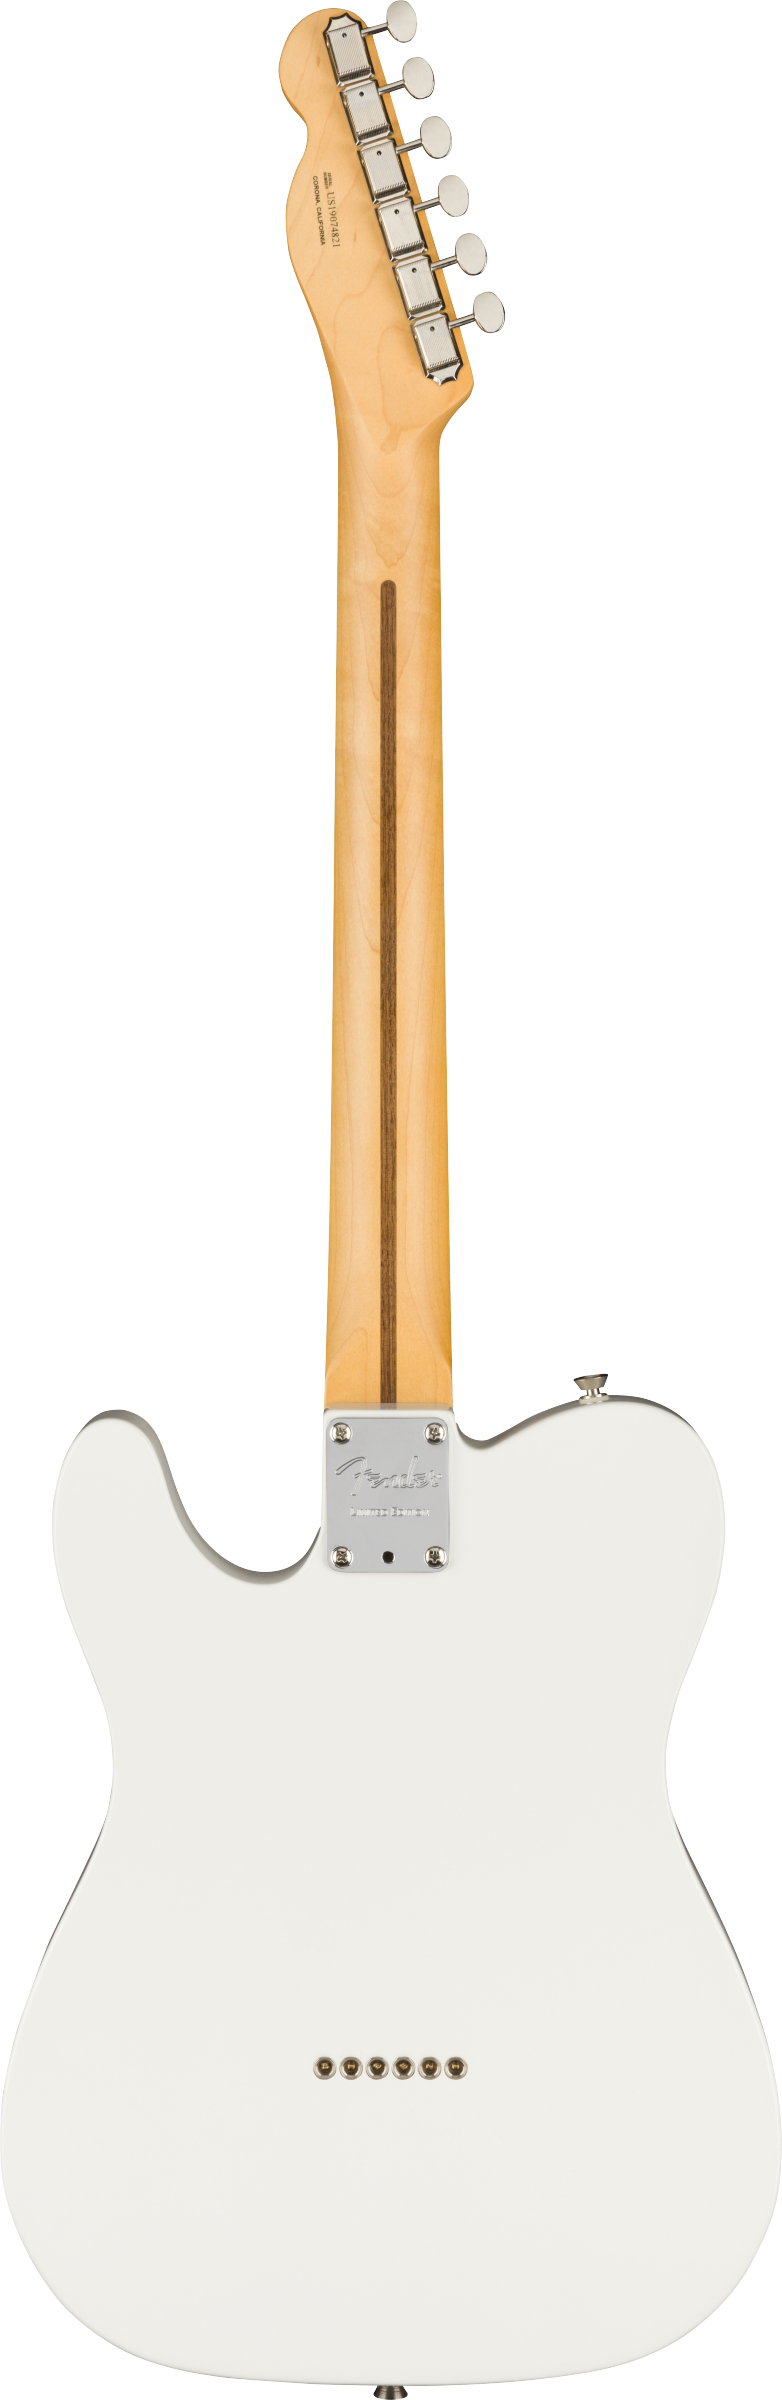 Fender Two-Tone Telecaster thinline LTD - touche ébène Surf green